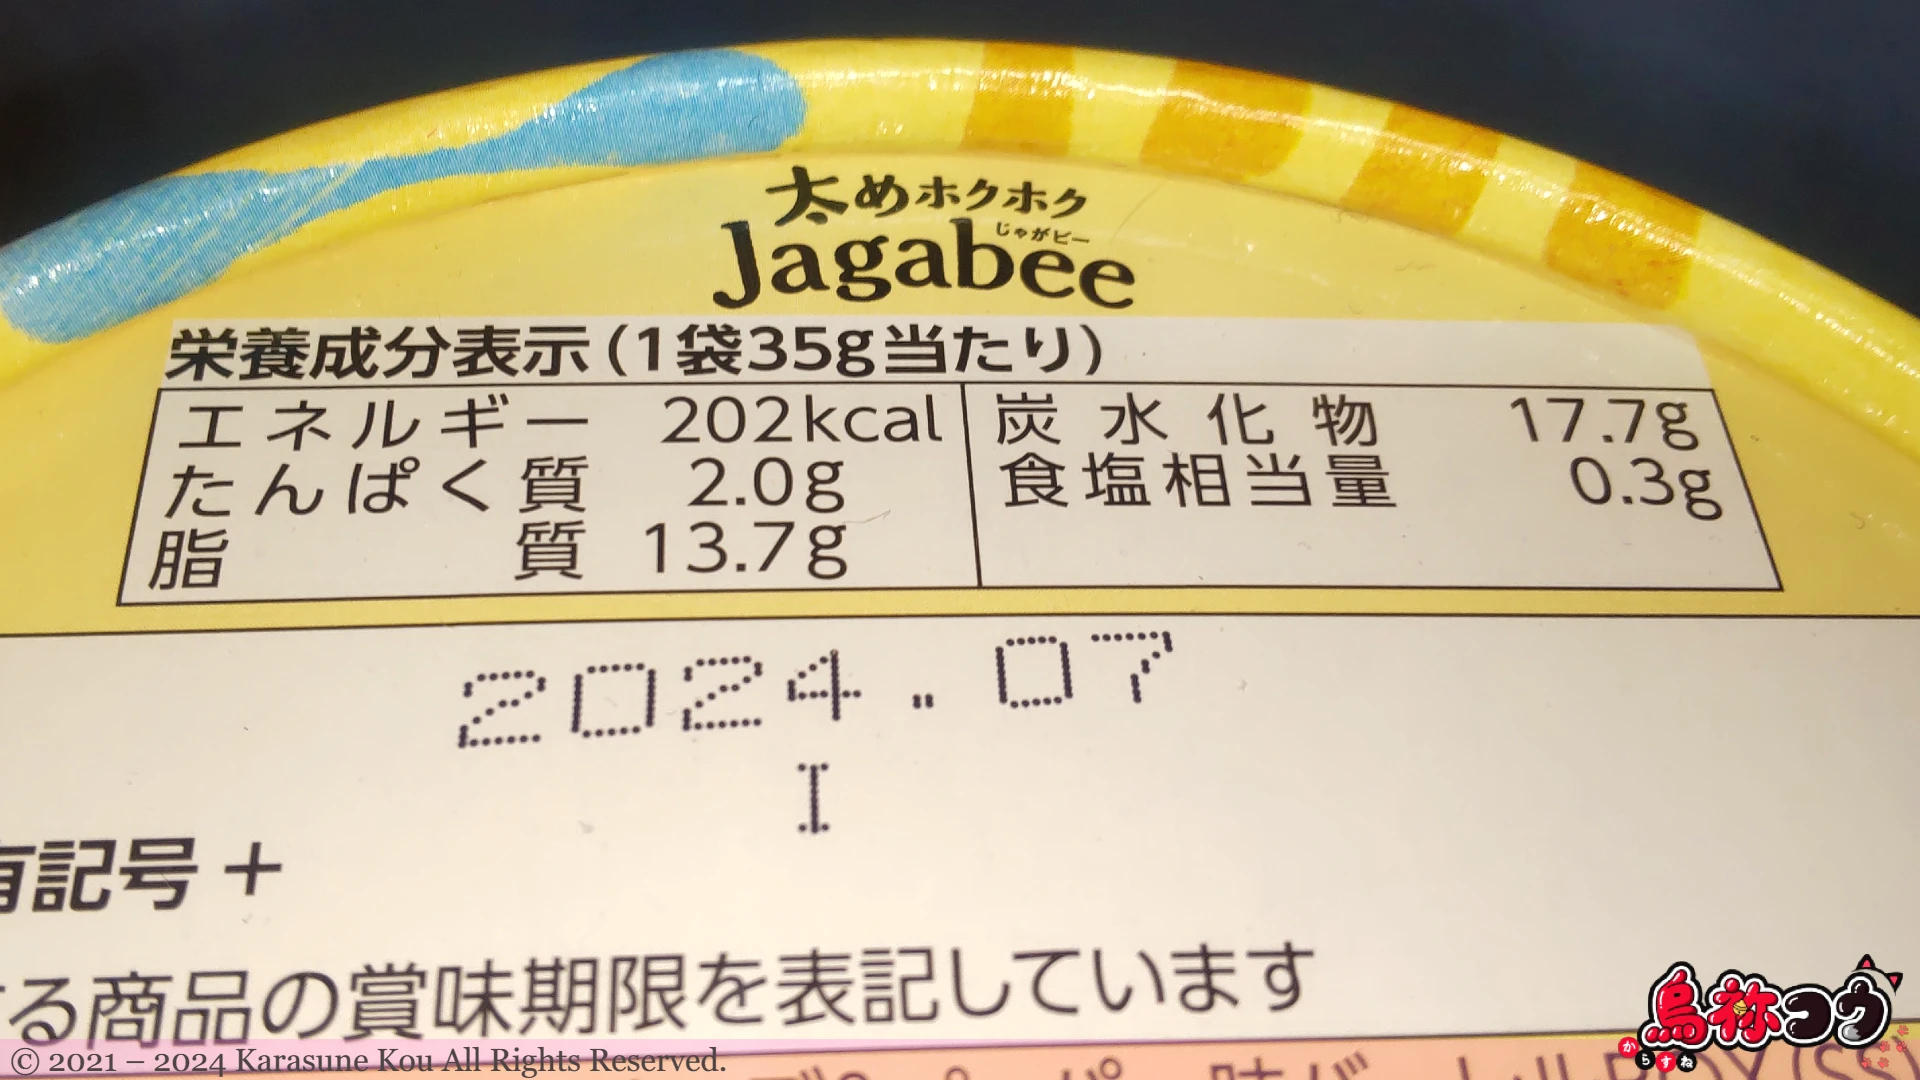 AM 太めホクホク Jagabee チーズ & ペッパー味バーレル BOX の栄養成分表示です